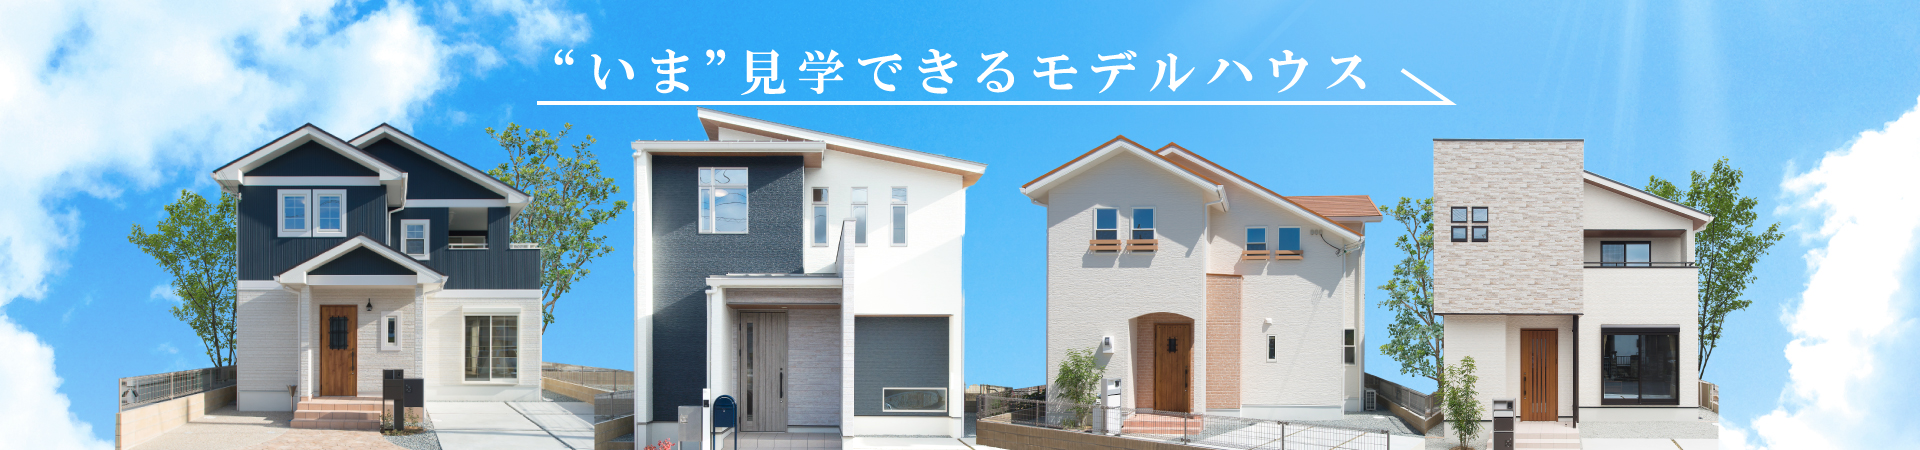 昭和住宅 姫路 高砂 加古川で新築一戸建て モデルハウス 注文住宅の家を買うなら